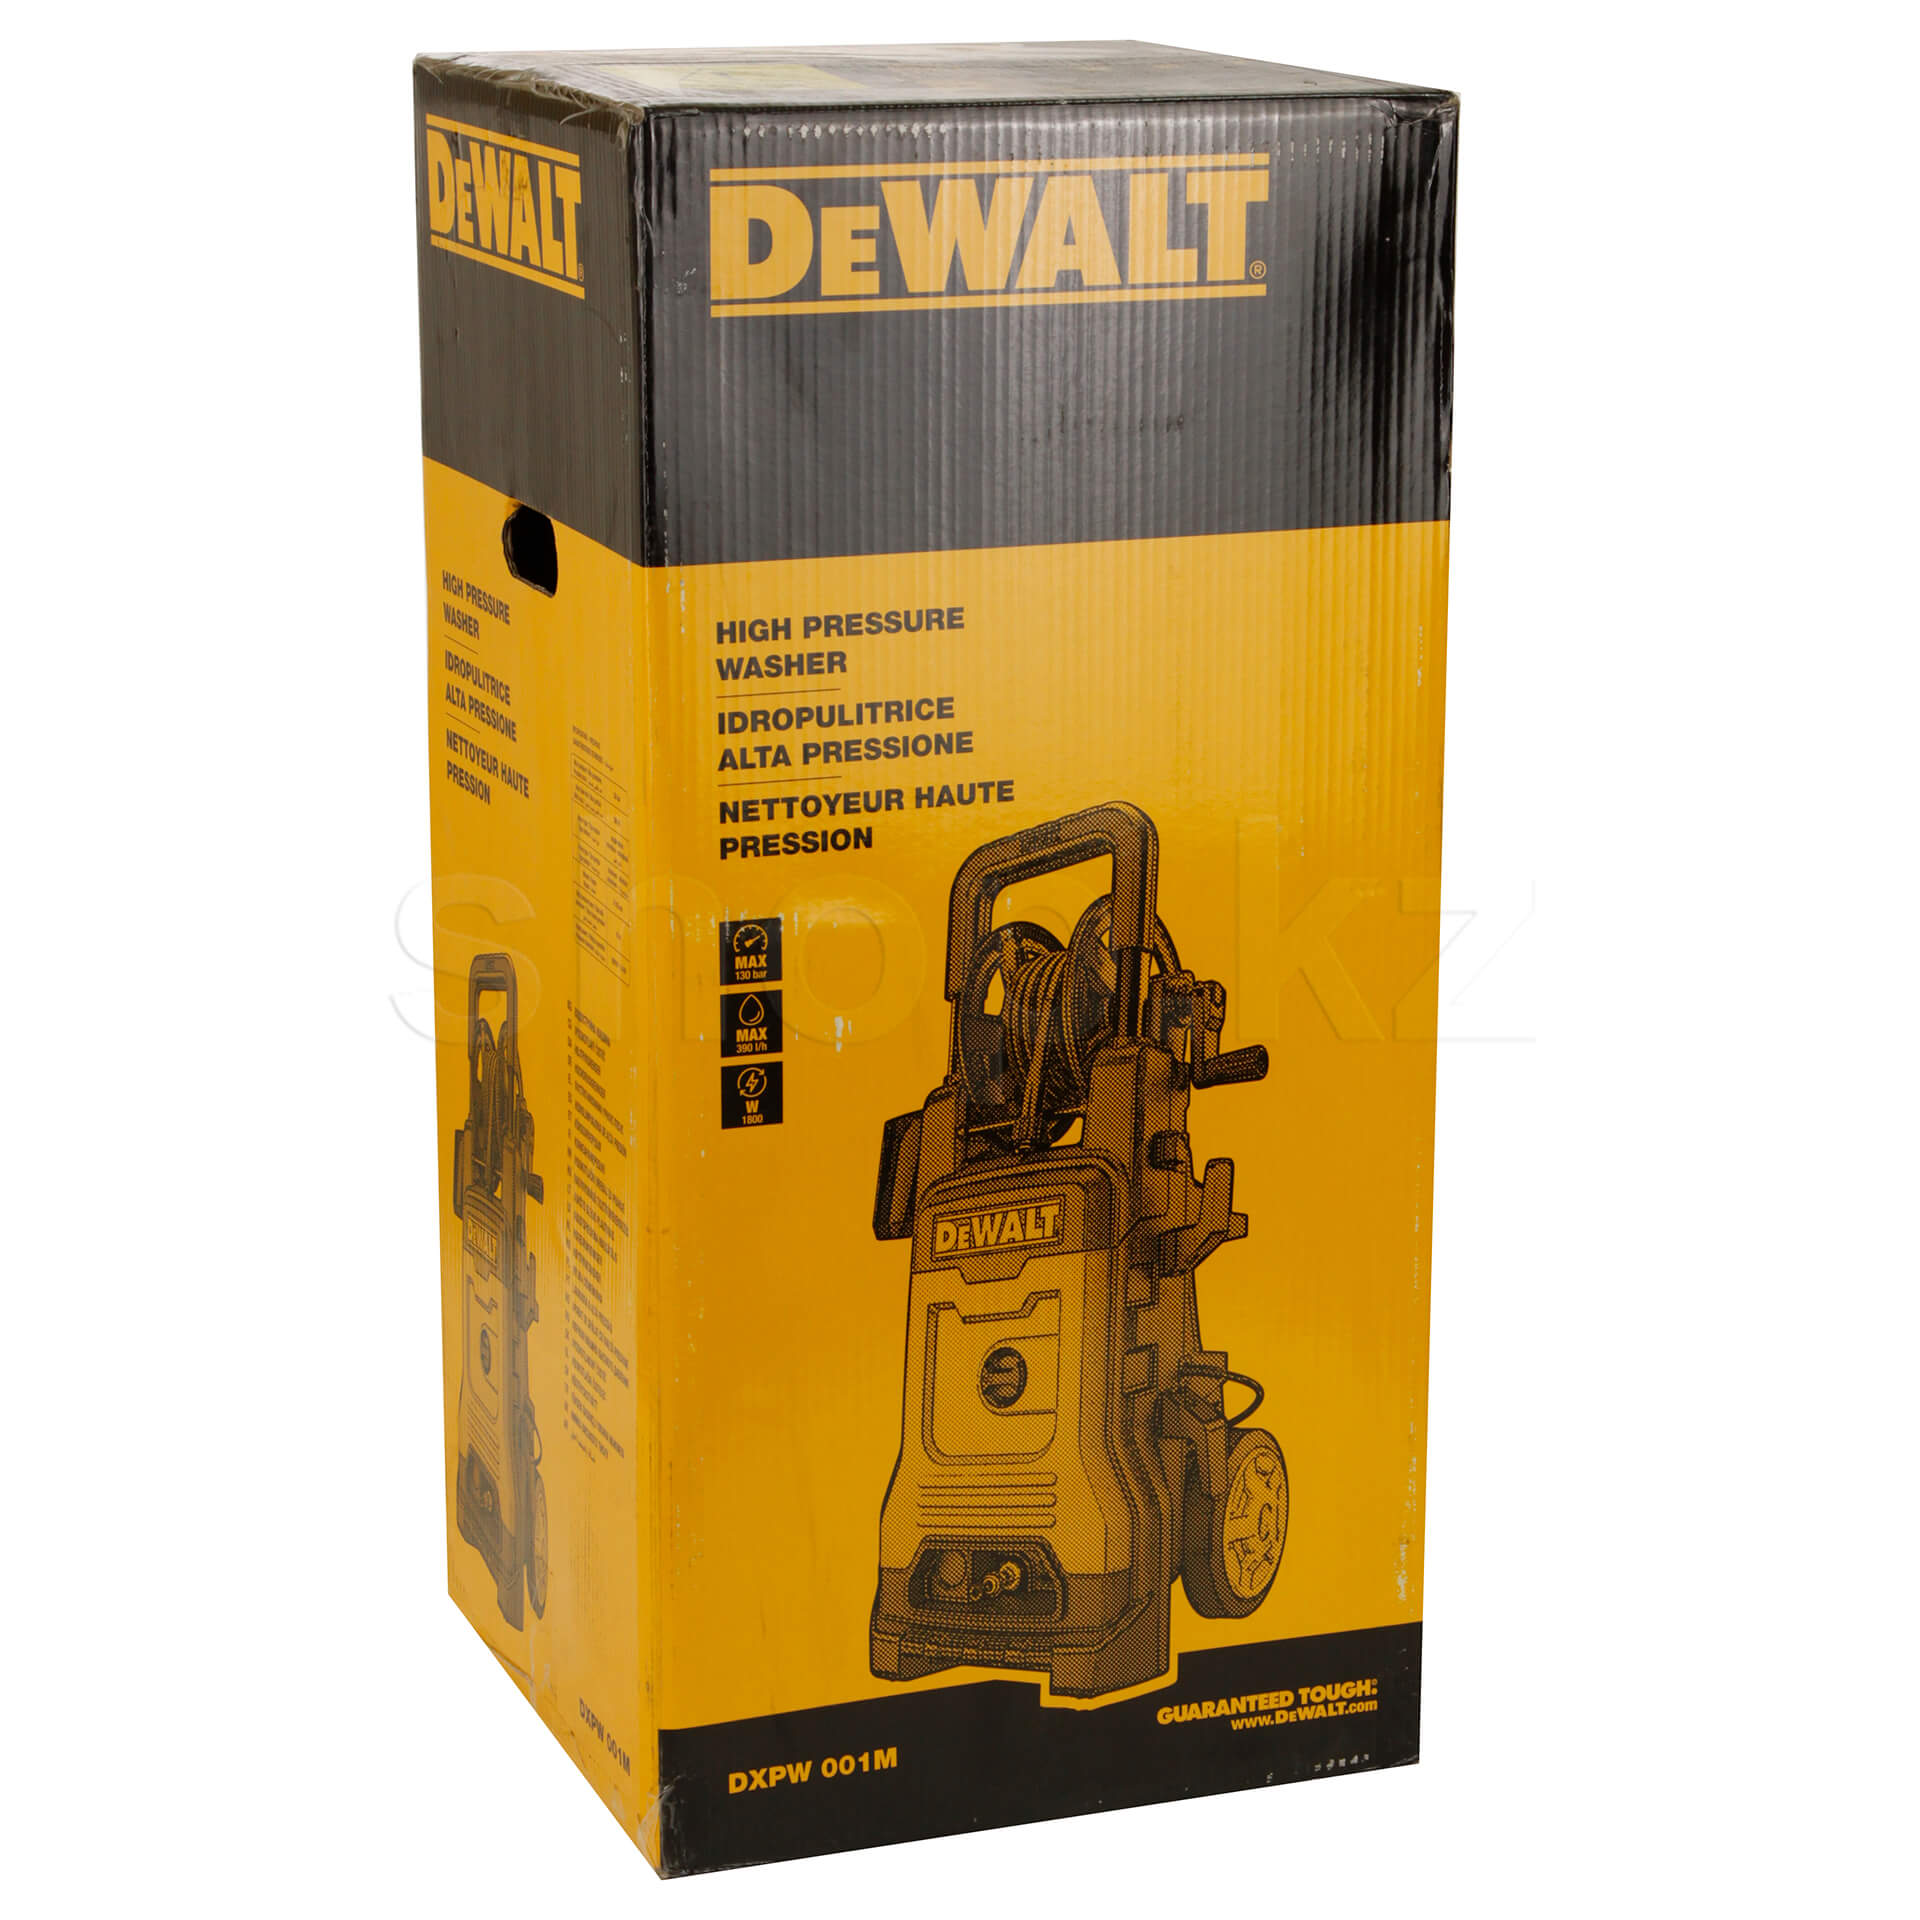 High pressure washer Dewalt DXPW001ME, 1800 W